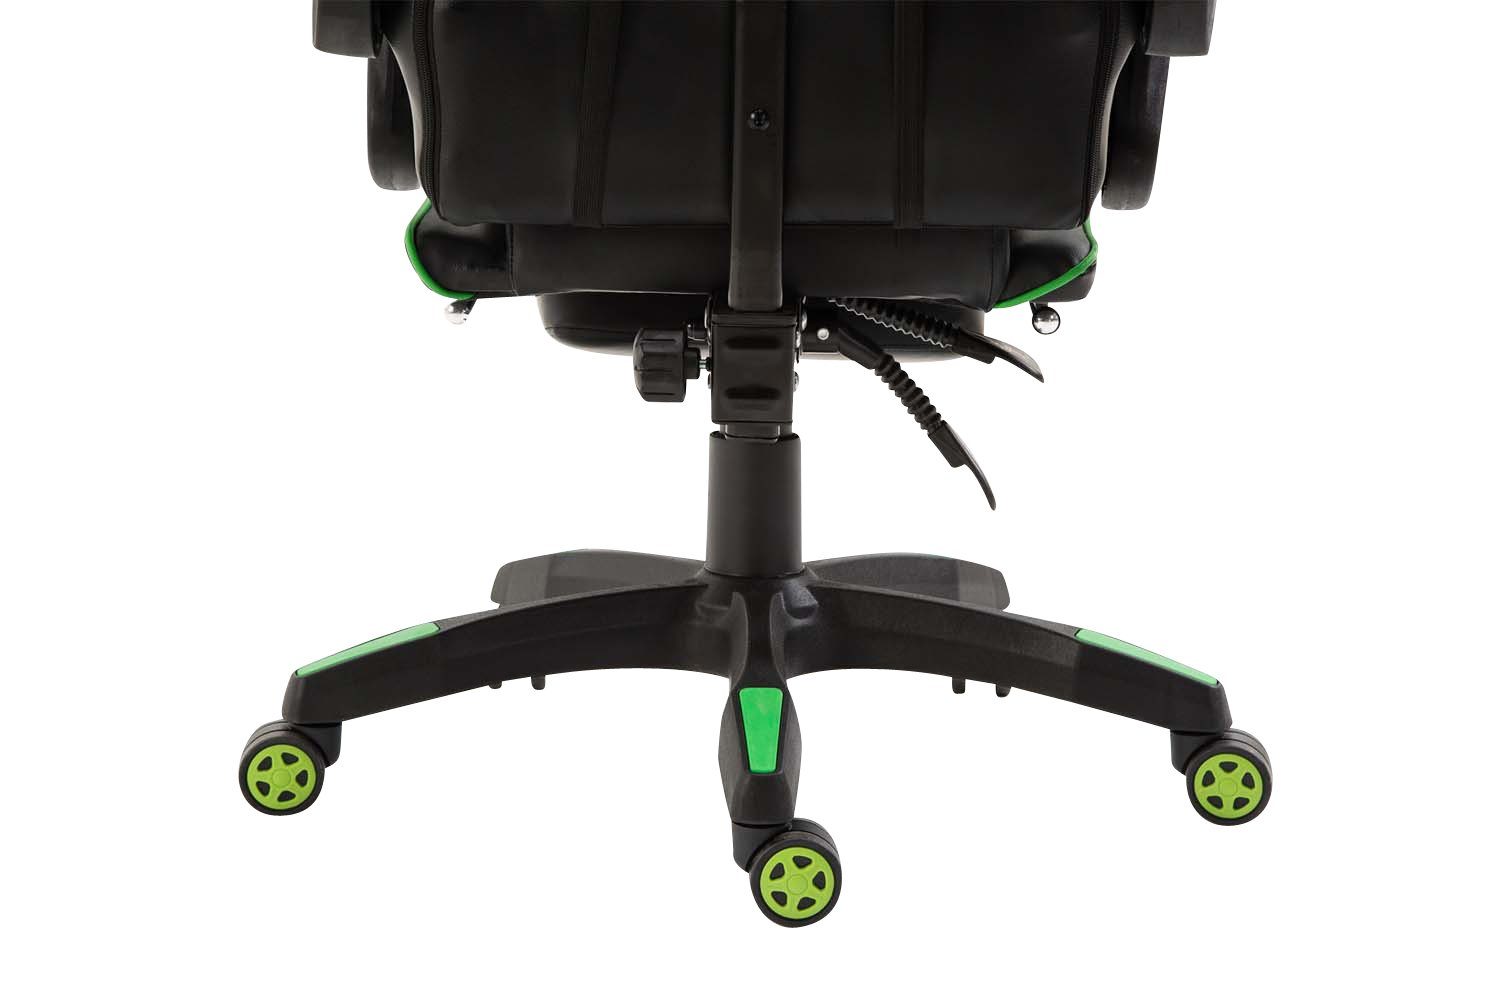 und Gaming schwarz/grün Kunstleder, drehbar höhenverstellbar Chair CLP Ignite